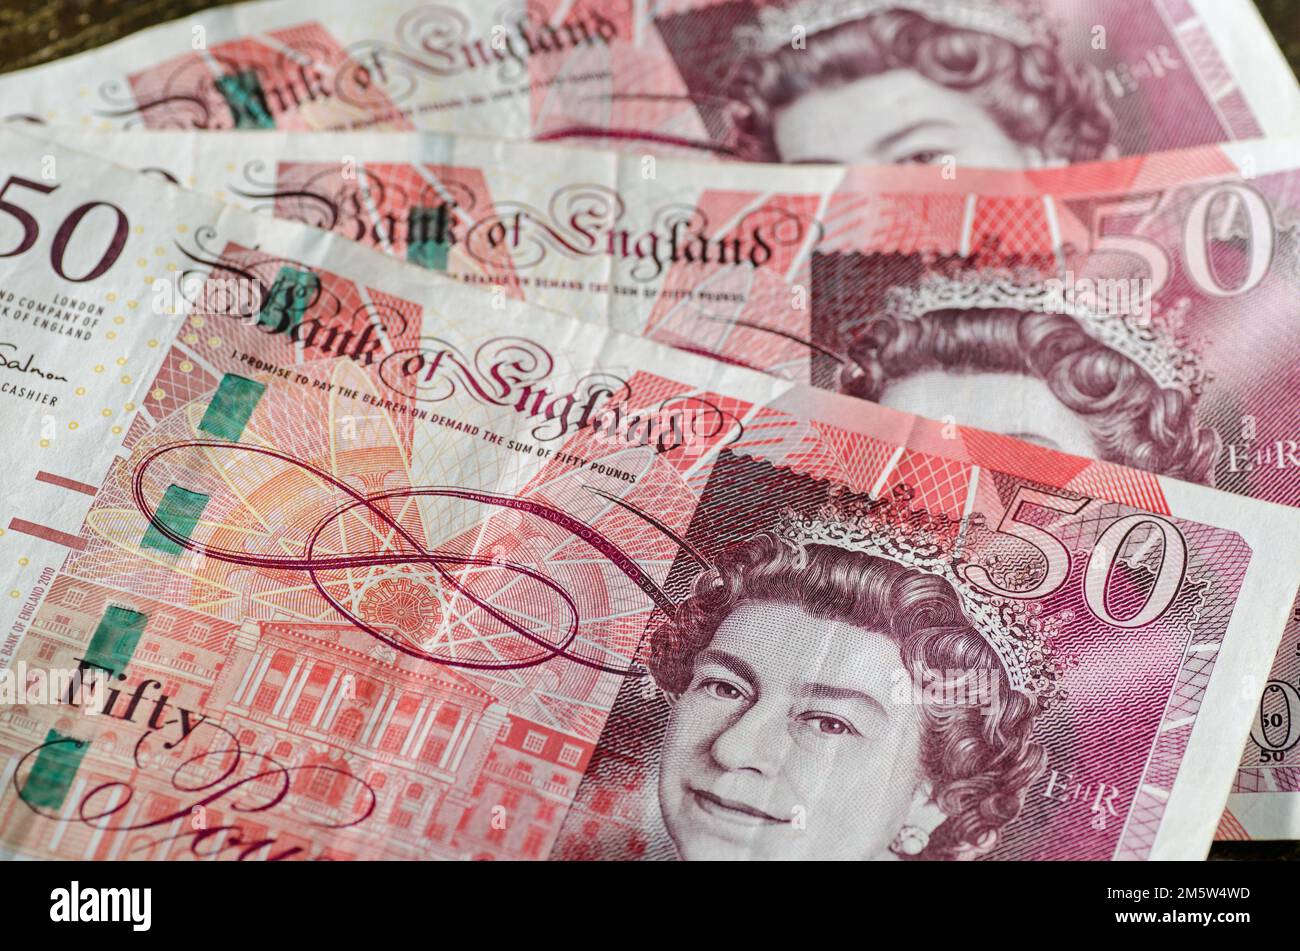 Nahaufnahme eines Fans von drei Banknoten der Bank of England im Wert von £50 Dollar, die Königin Elizabeth II. Mit pinkfarbenem und orangefarbenem Hintergrund zeigen. Gebrauchte Banknoten, fotografiert A Stockfoto